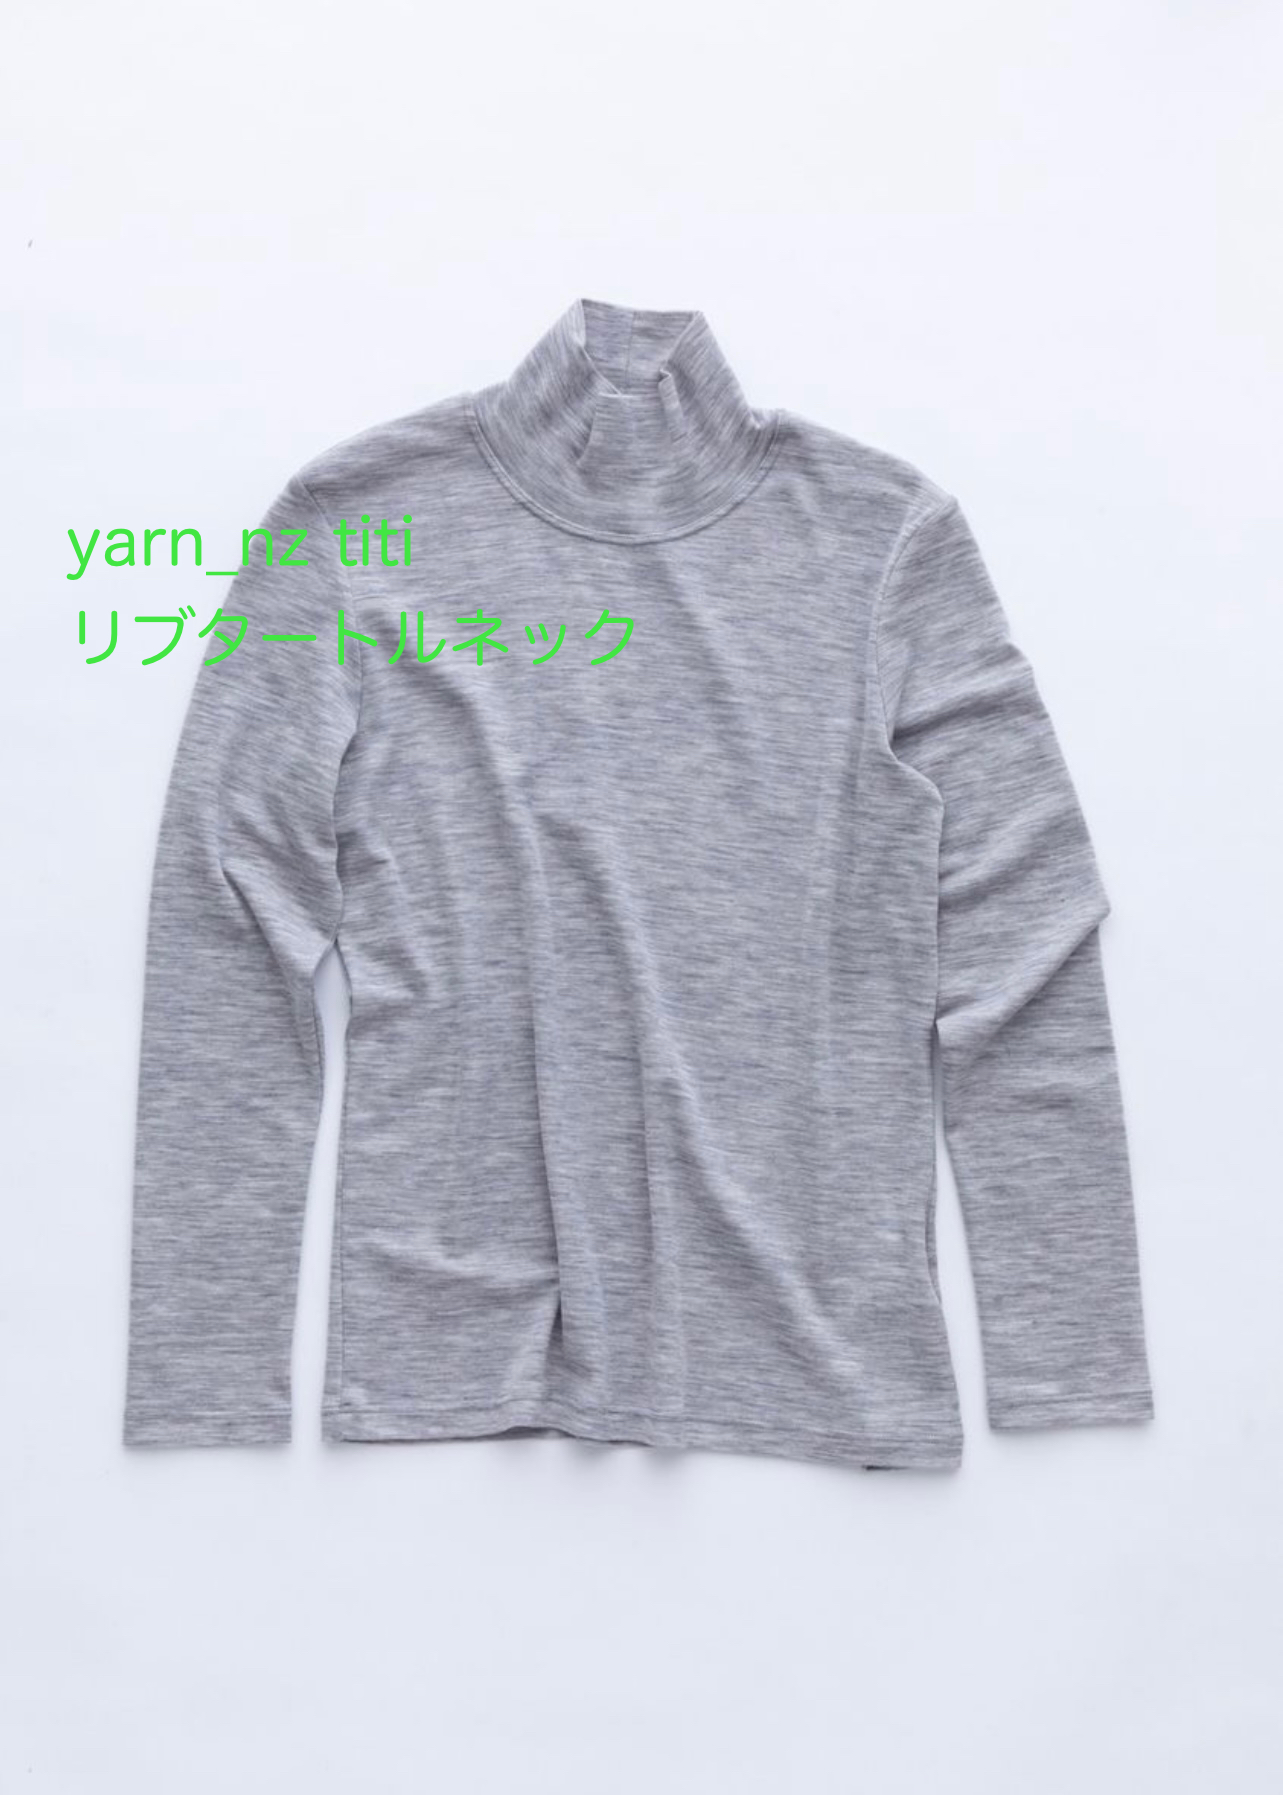 yarn22aw2